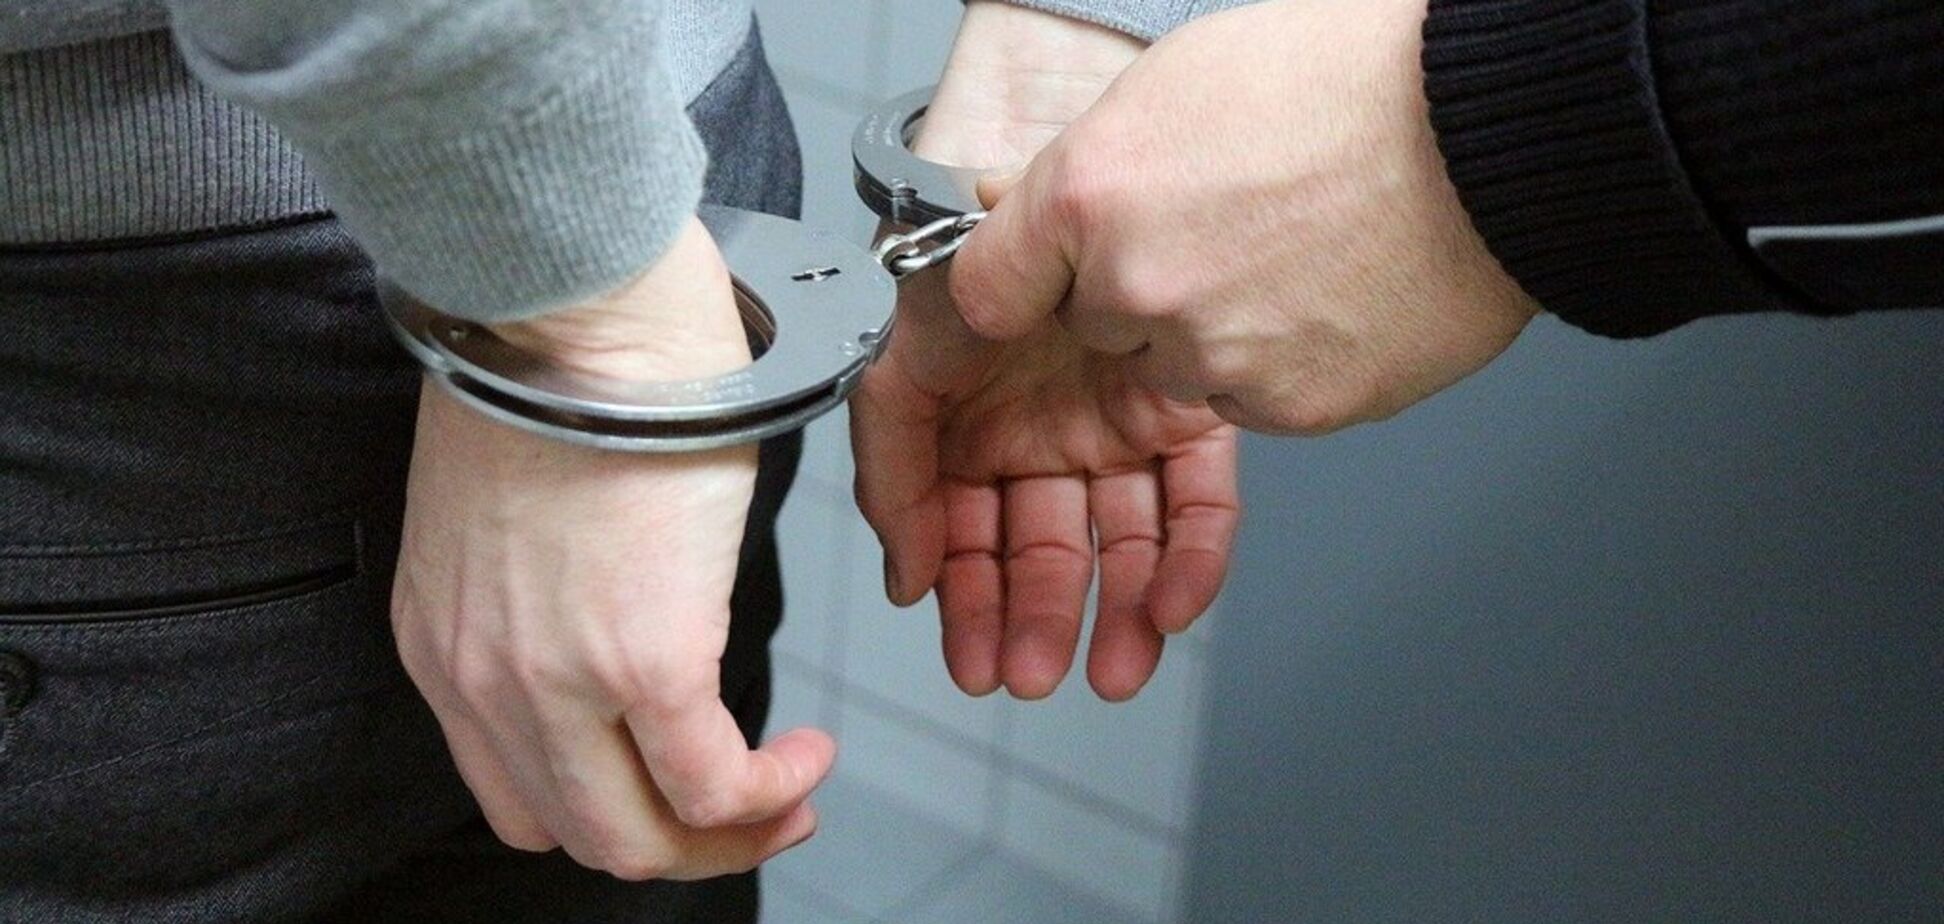 Зберігав для власного вживання: під Дніпром затримали чоловіка з метамфетаміном